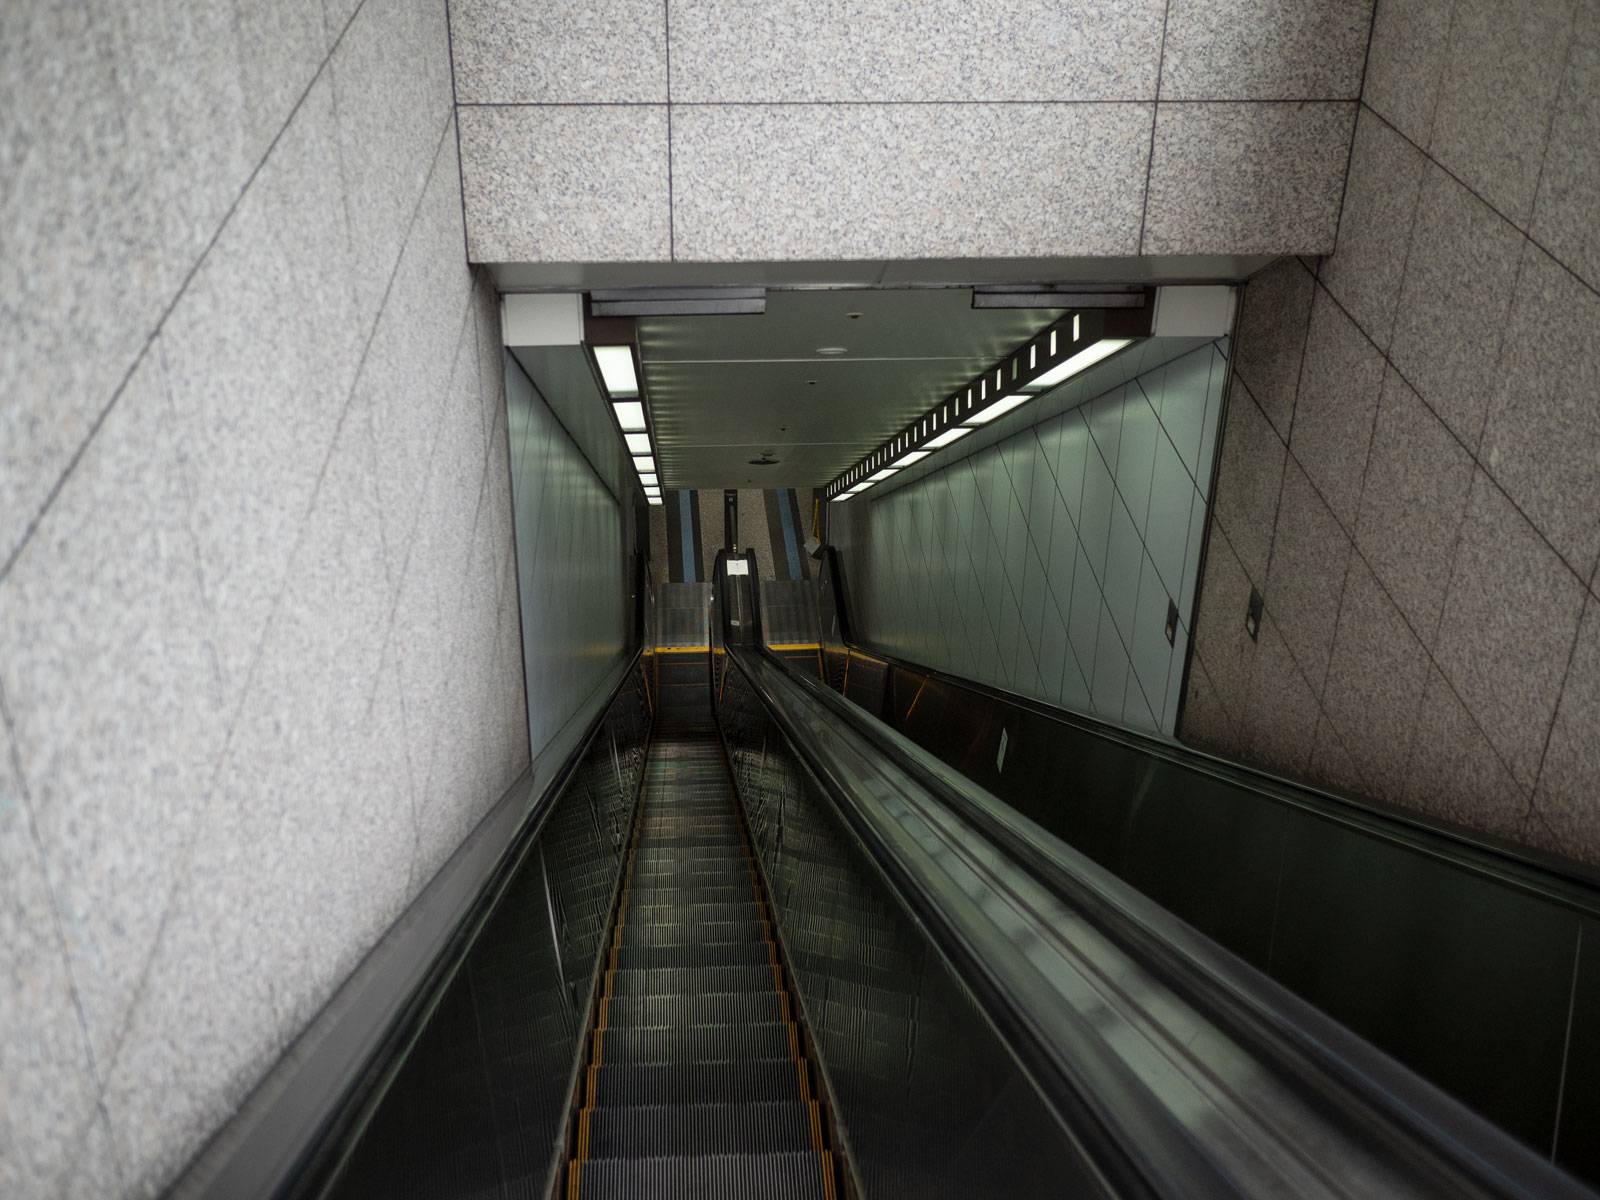 Taking the escalator down to Shinsaibashi subway